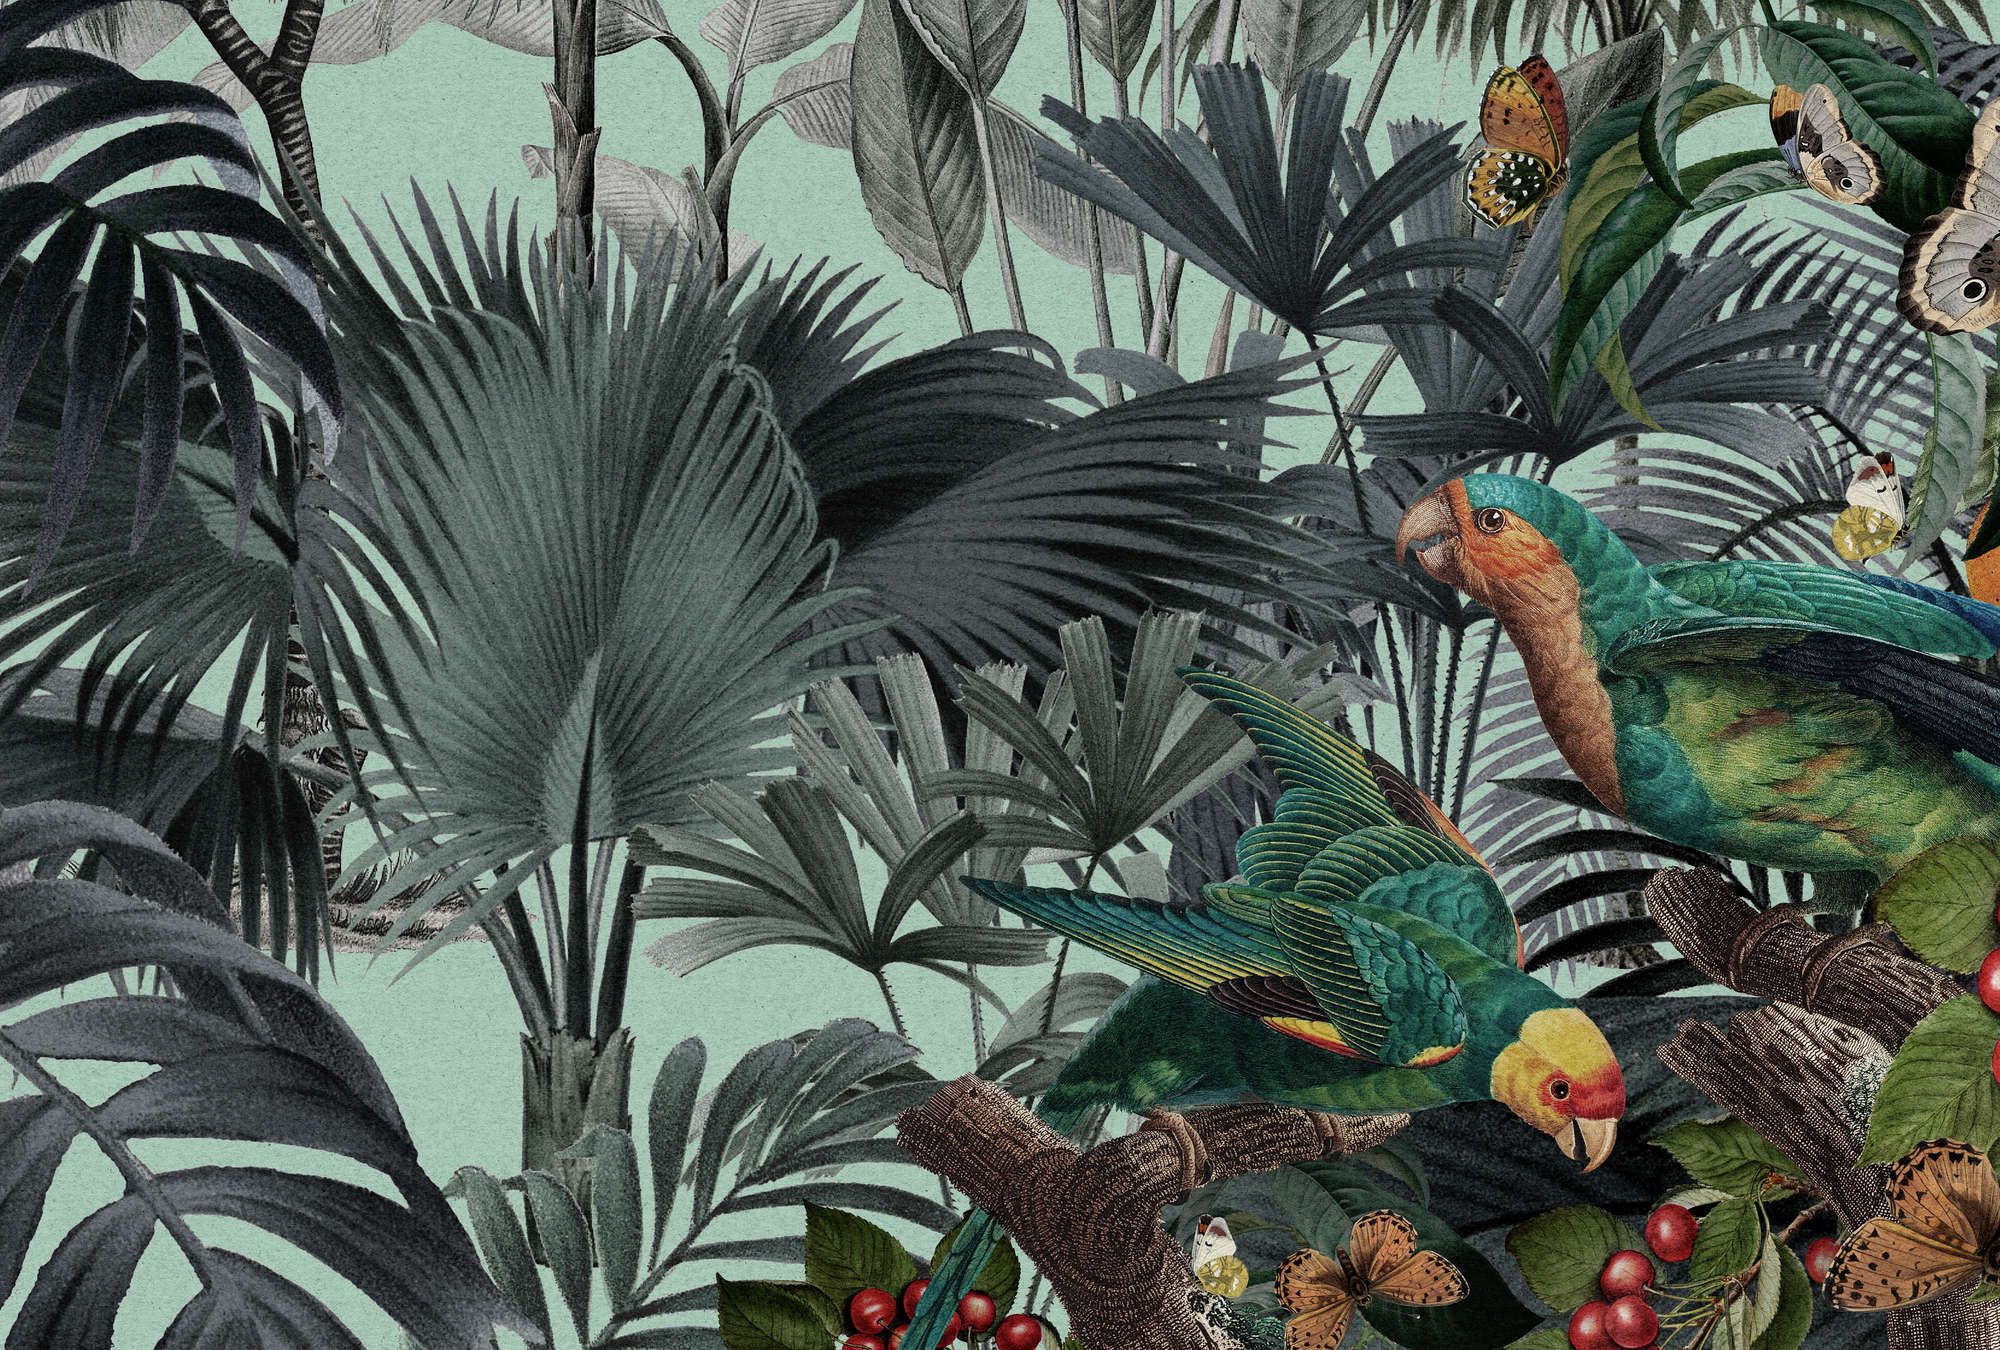             Fototapete »arabella« - Dschungel & Papageien auf Kraftpapier-Optik – Leicht strukturiertes Vlies
        